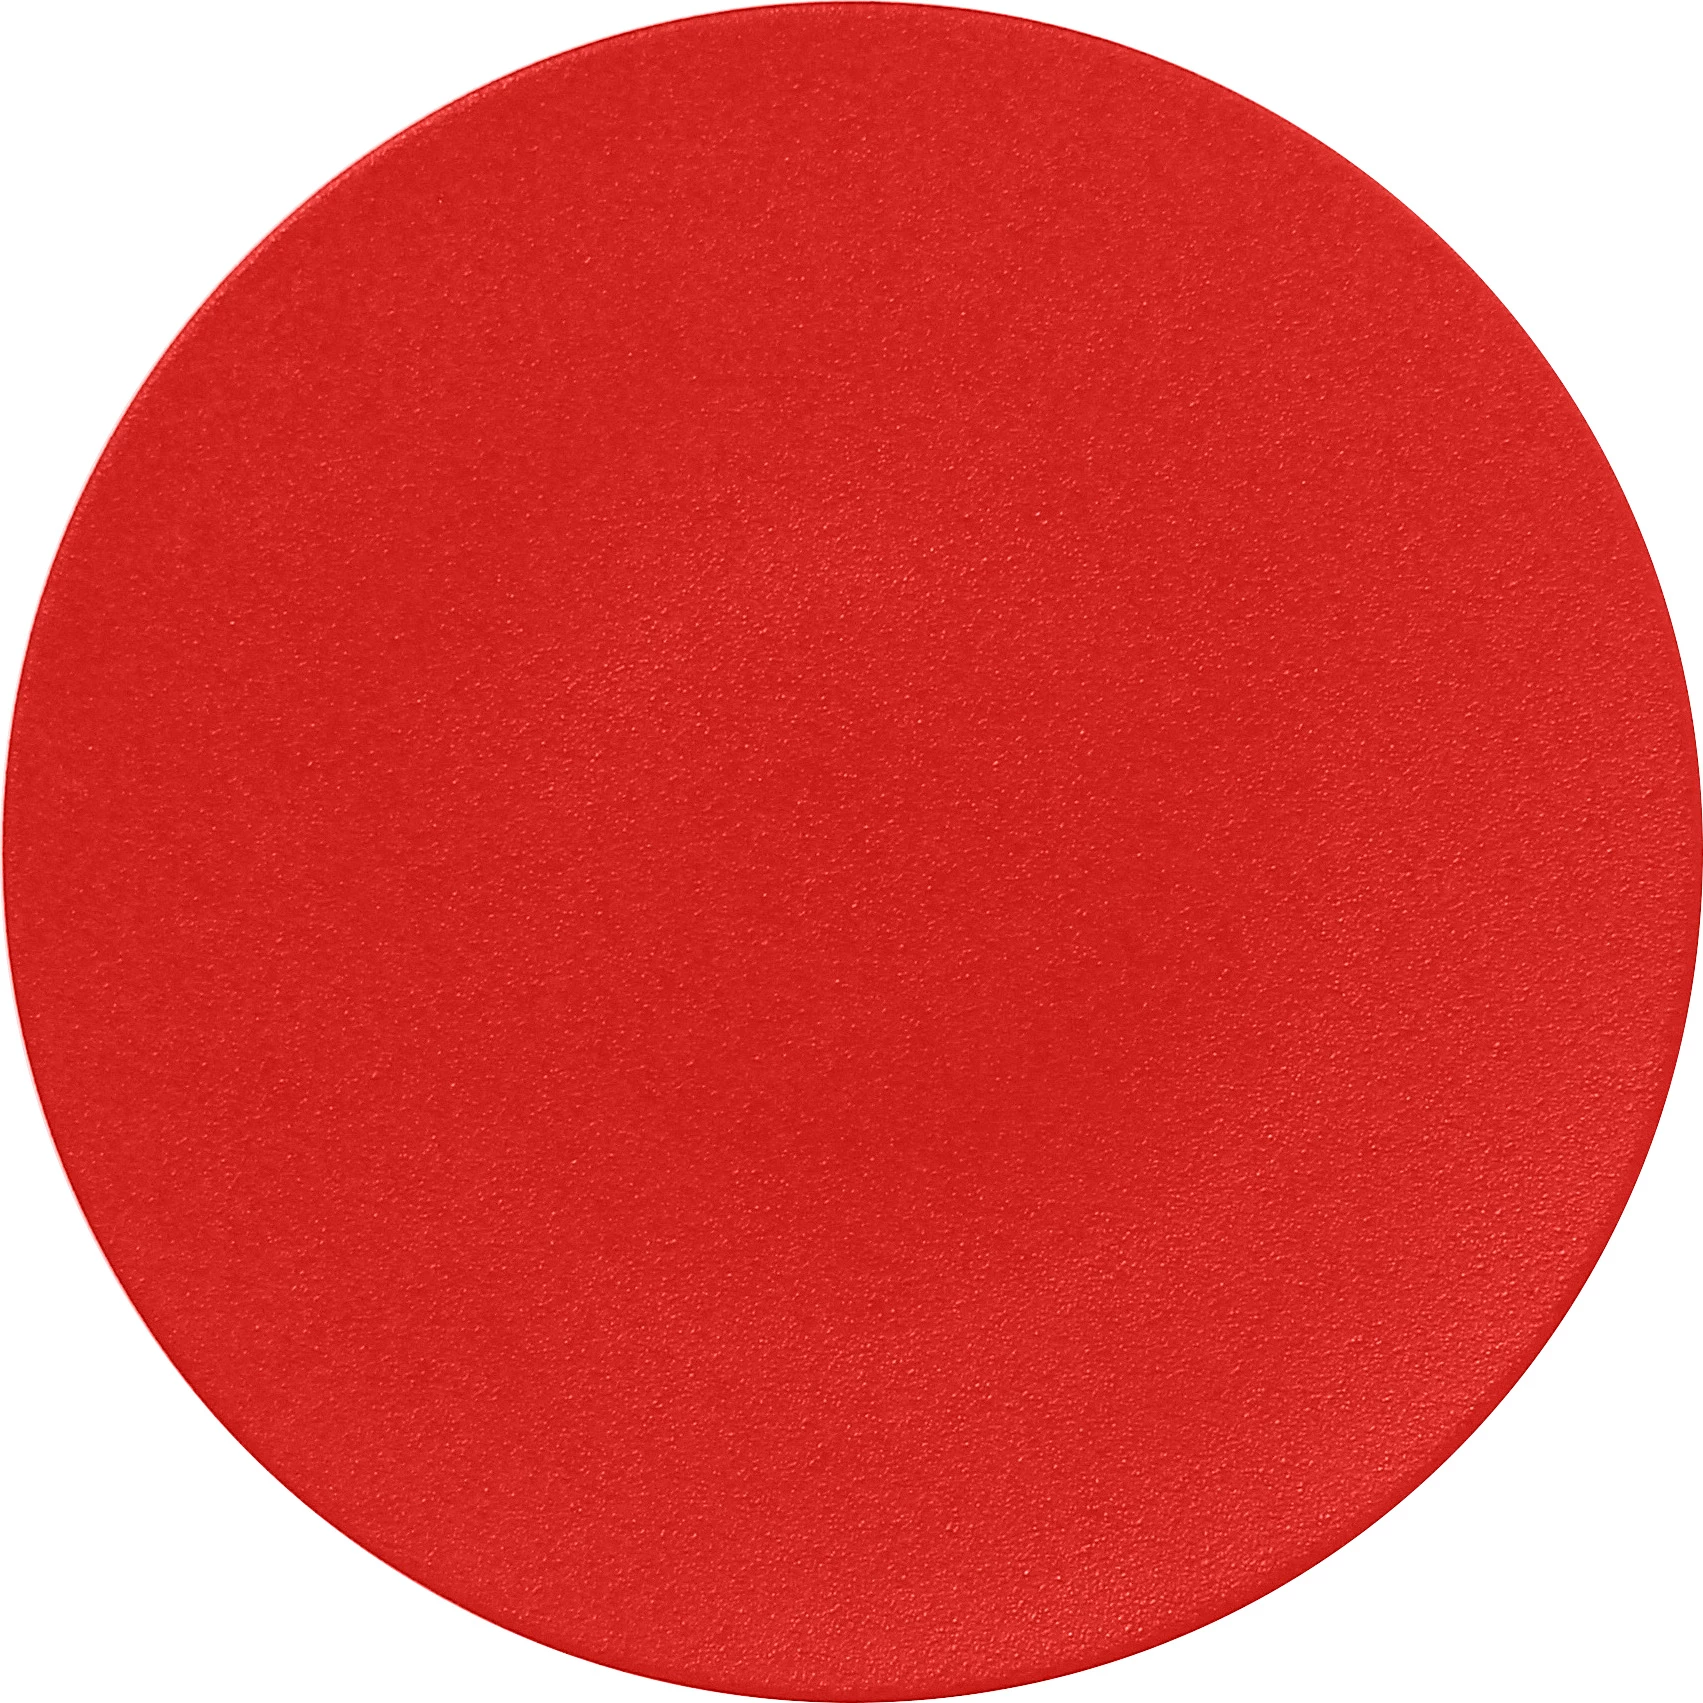 RAK Neofusion flad tallerken uden fane, rød, ø29 cm